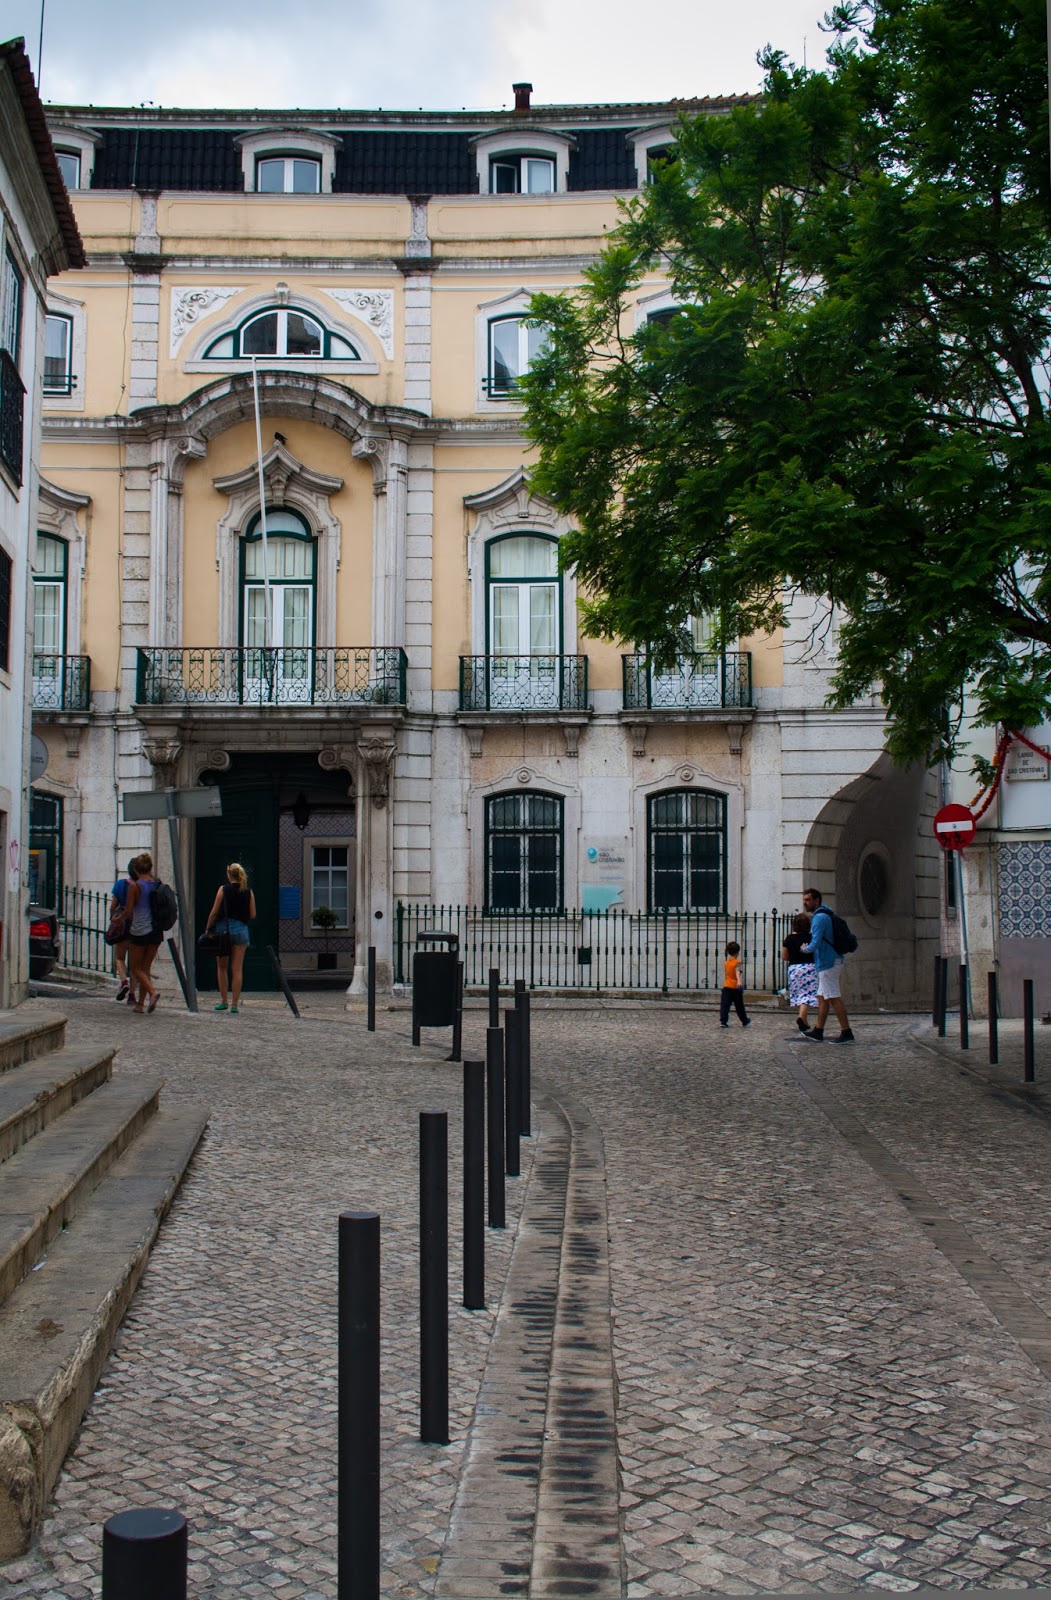 Lisboa - Comparações com outros tempos: Ermida de Santo Amaro